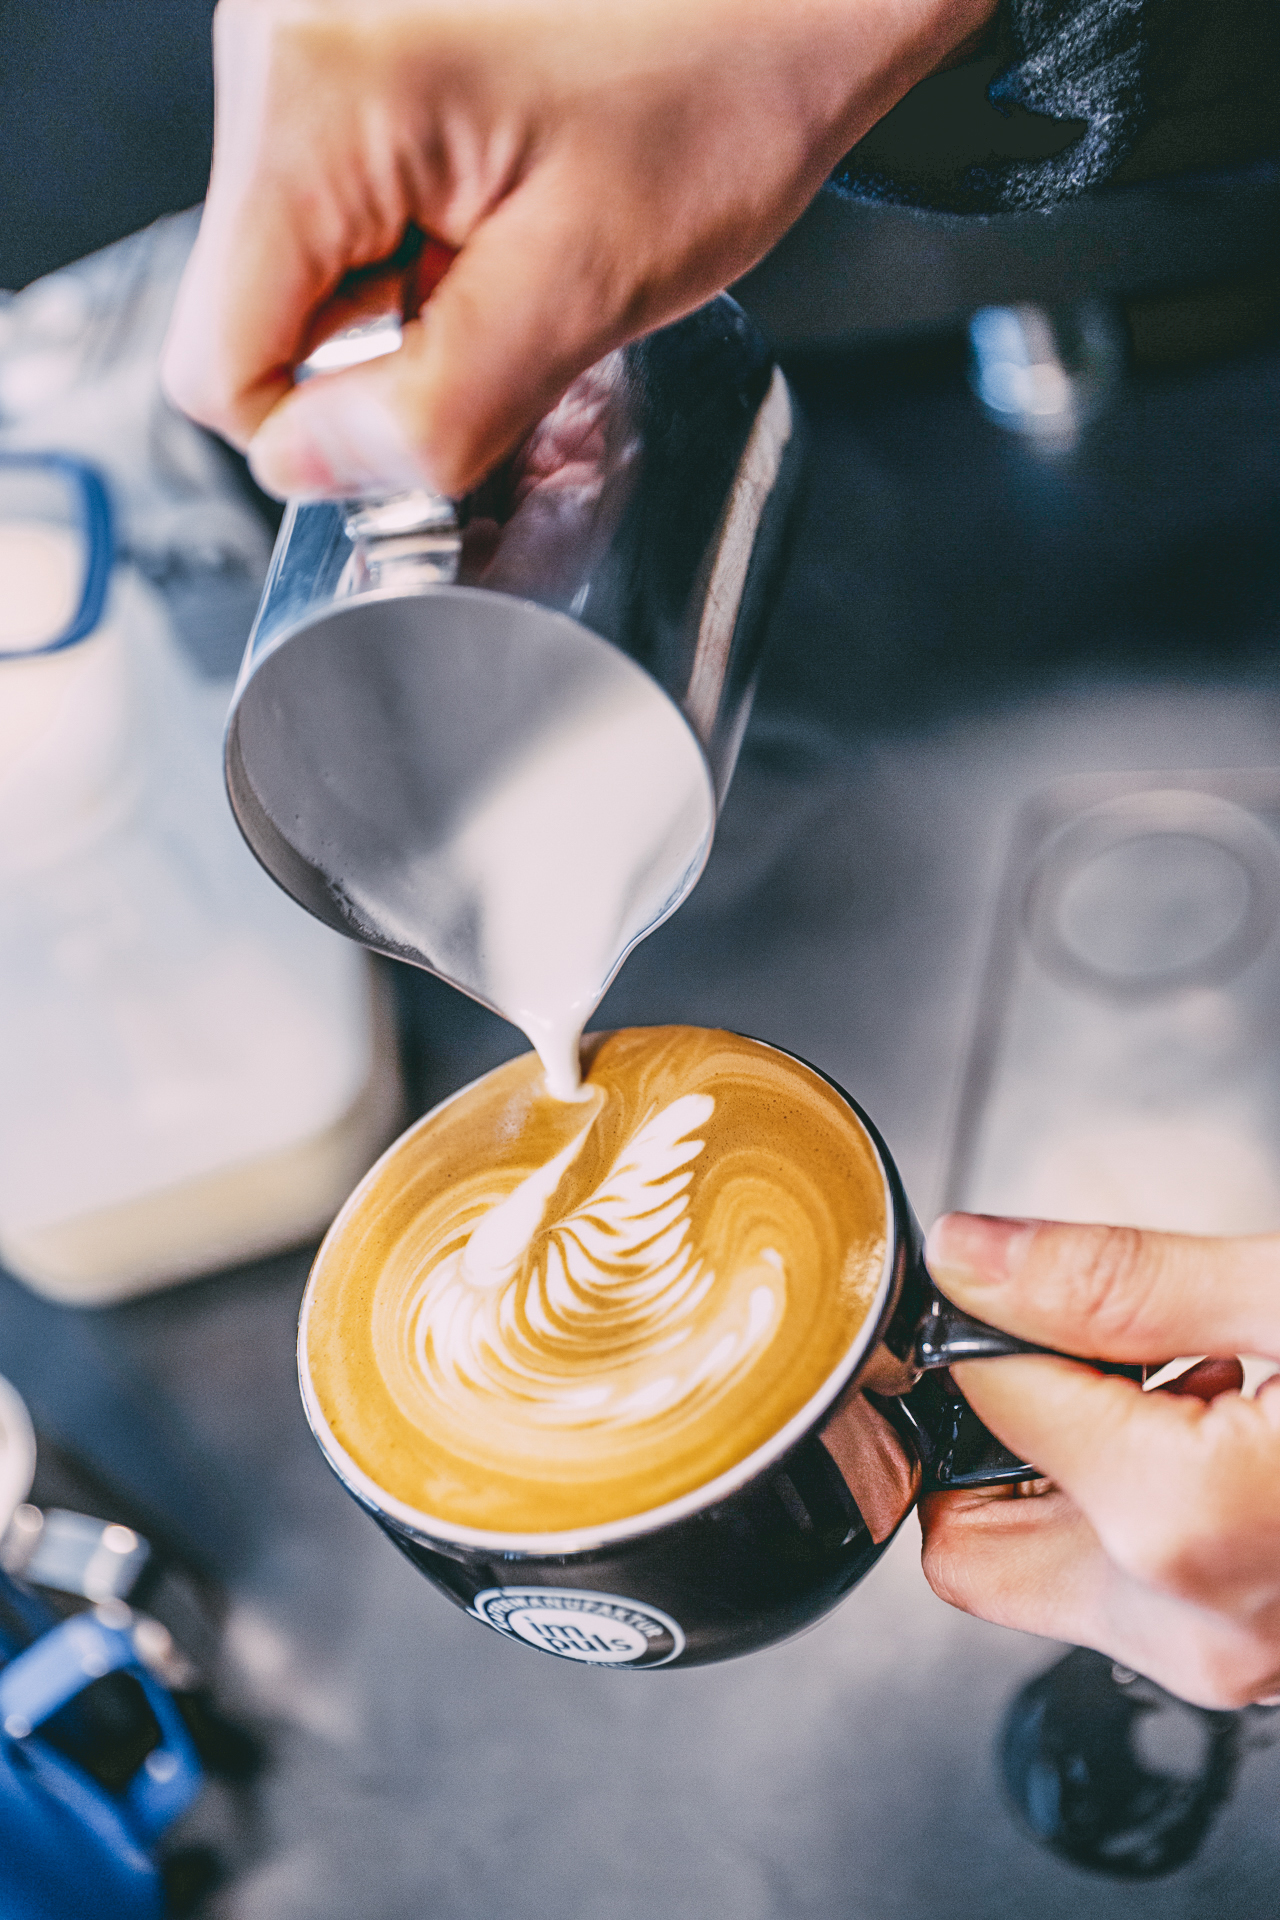 Milch wird in einen Kaffee gekippt und dabei Latte-Art praktiziert